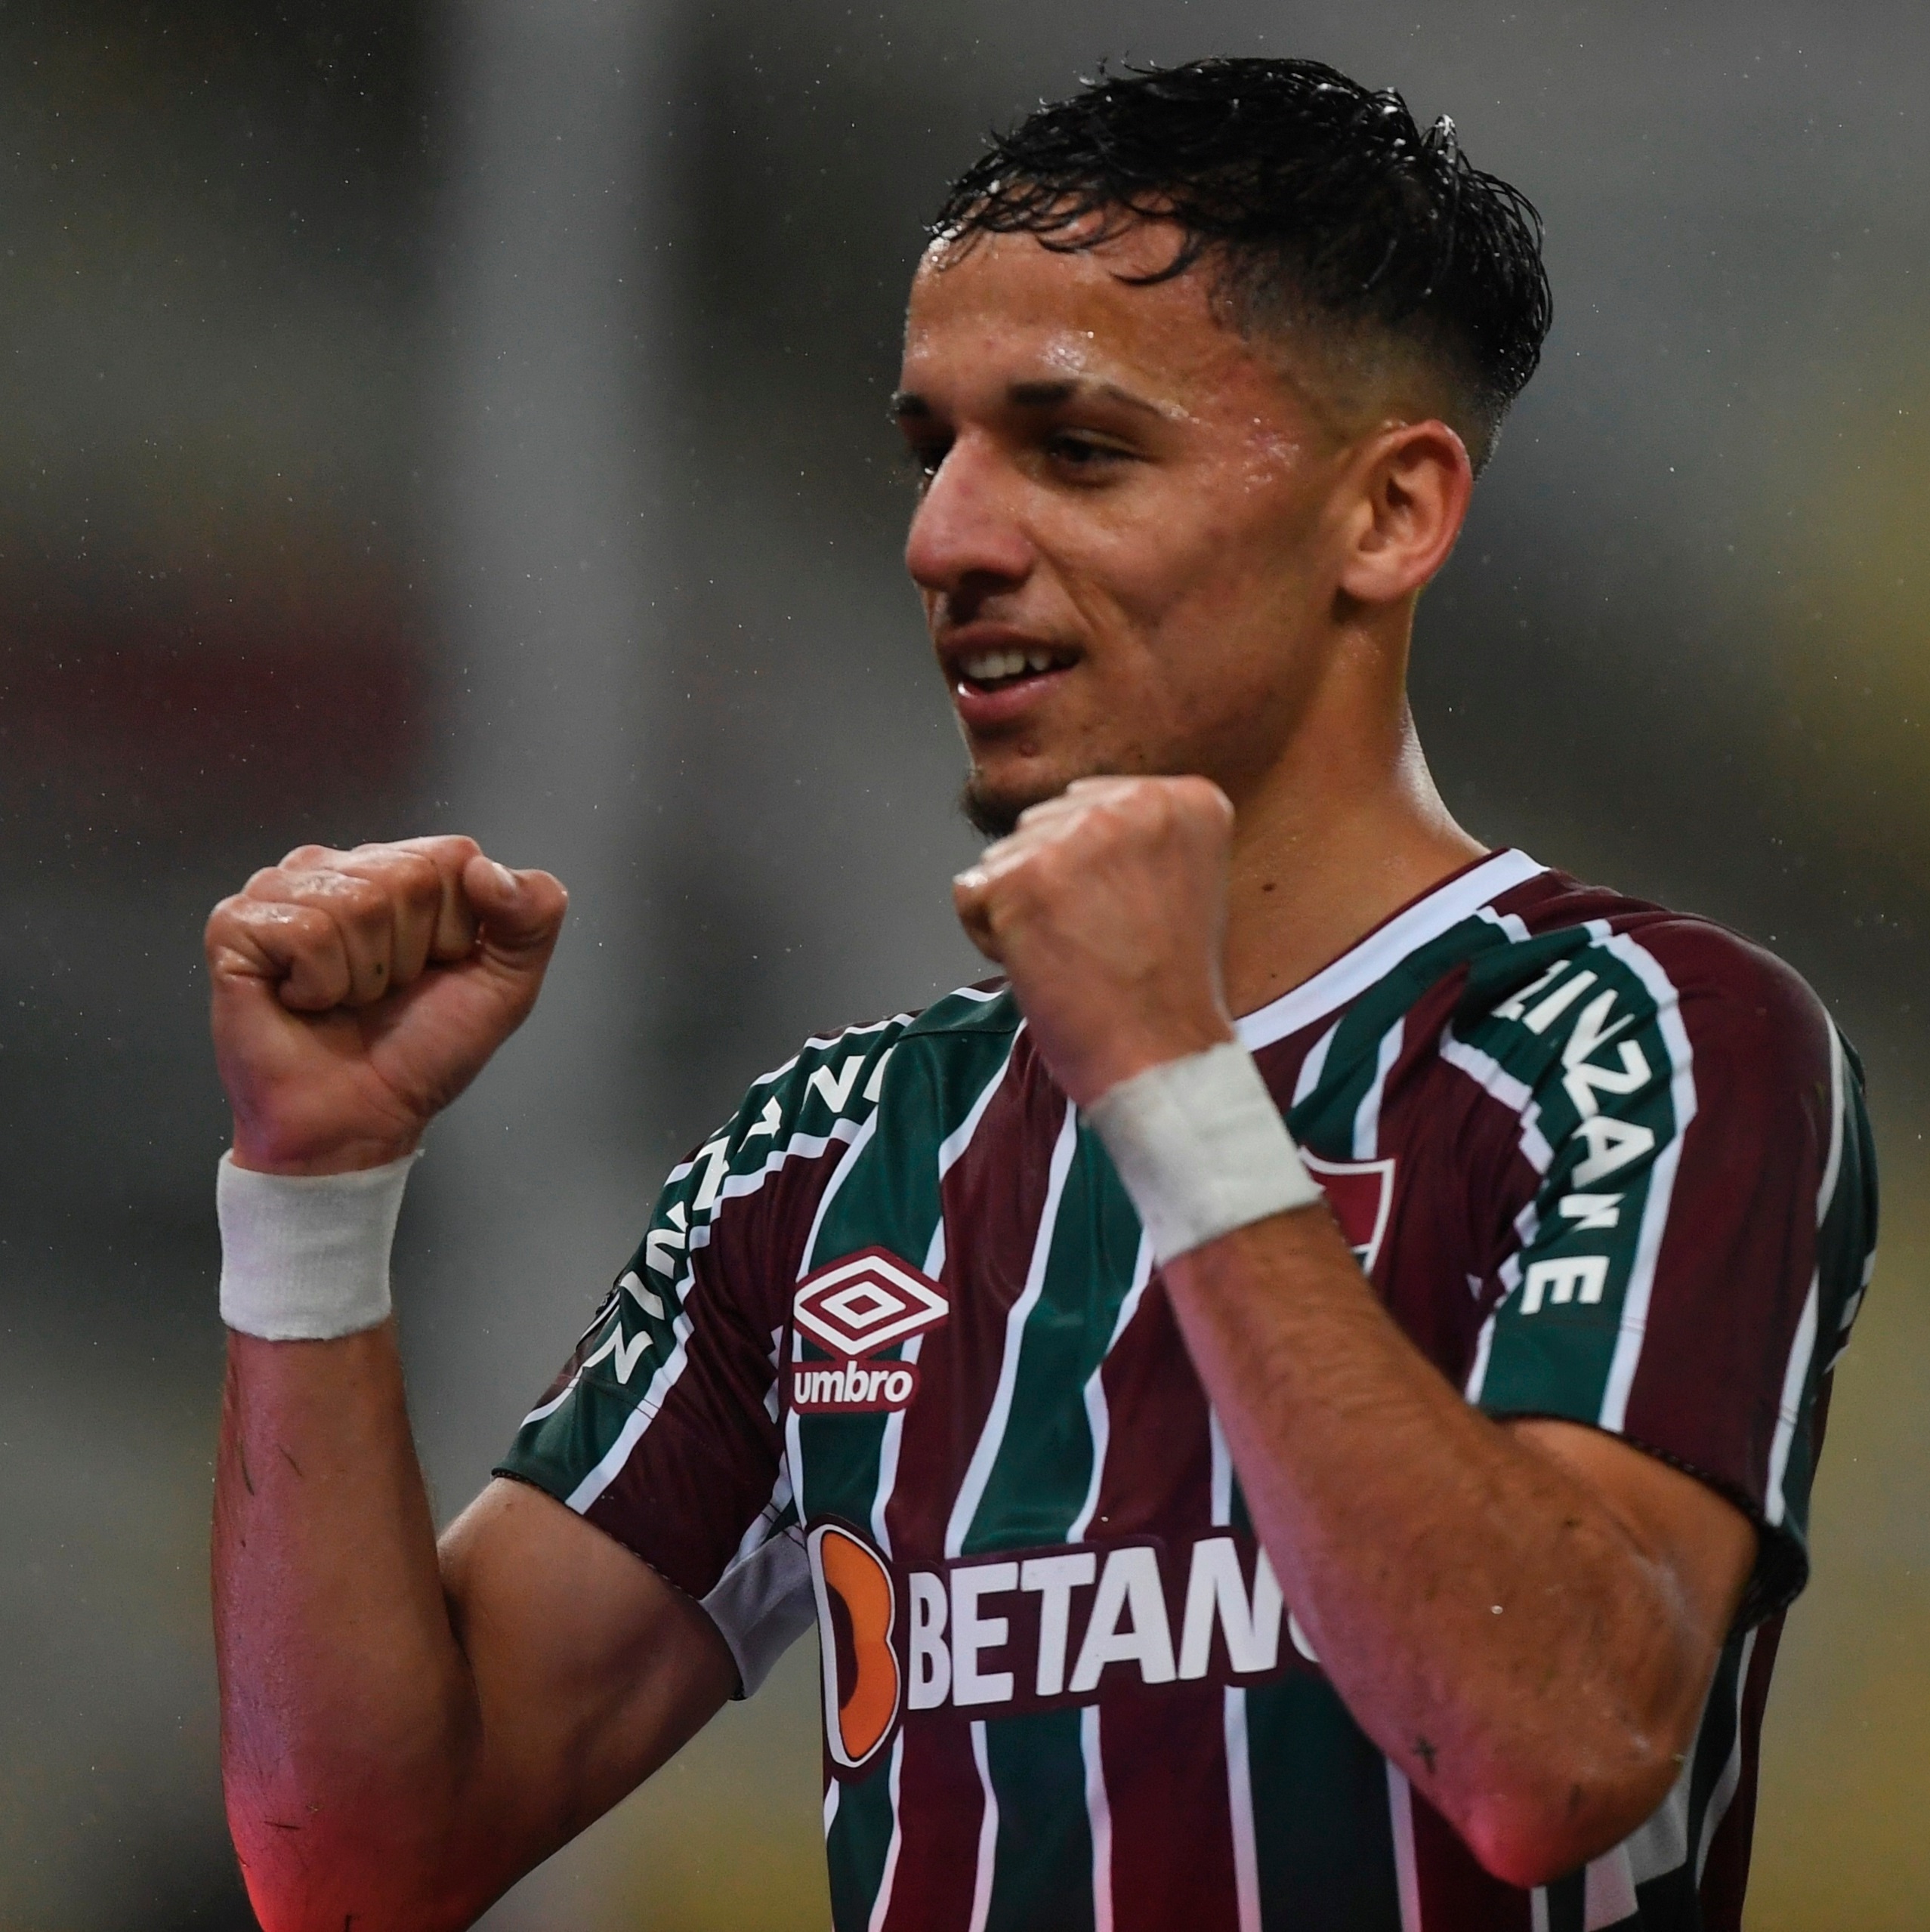 Gabriel Teixeira marca e Fluminense encerra invencibilidade de 18 jogos do  Cuiabá